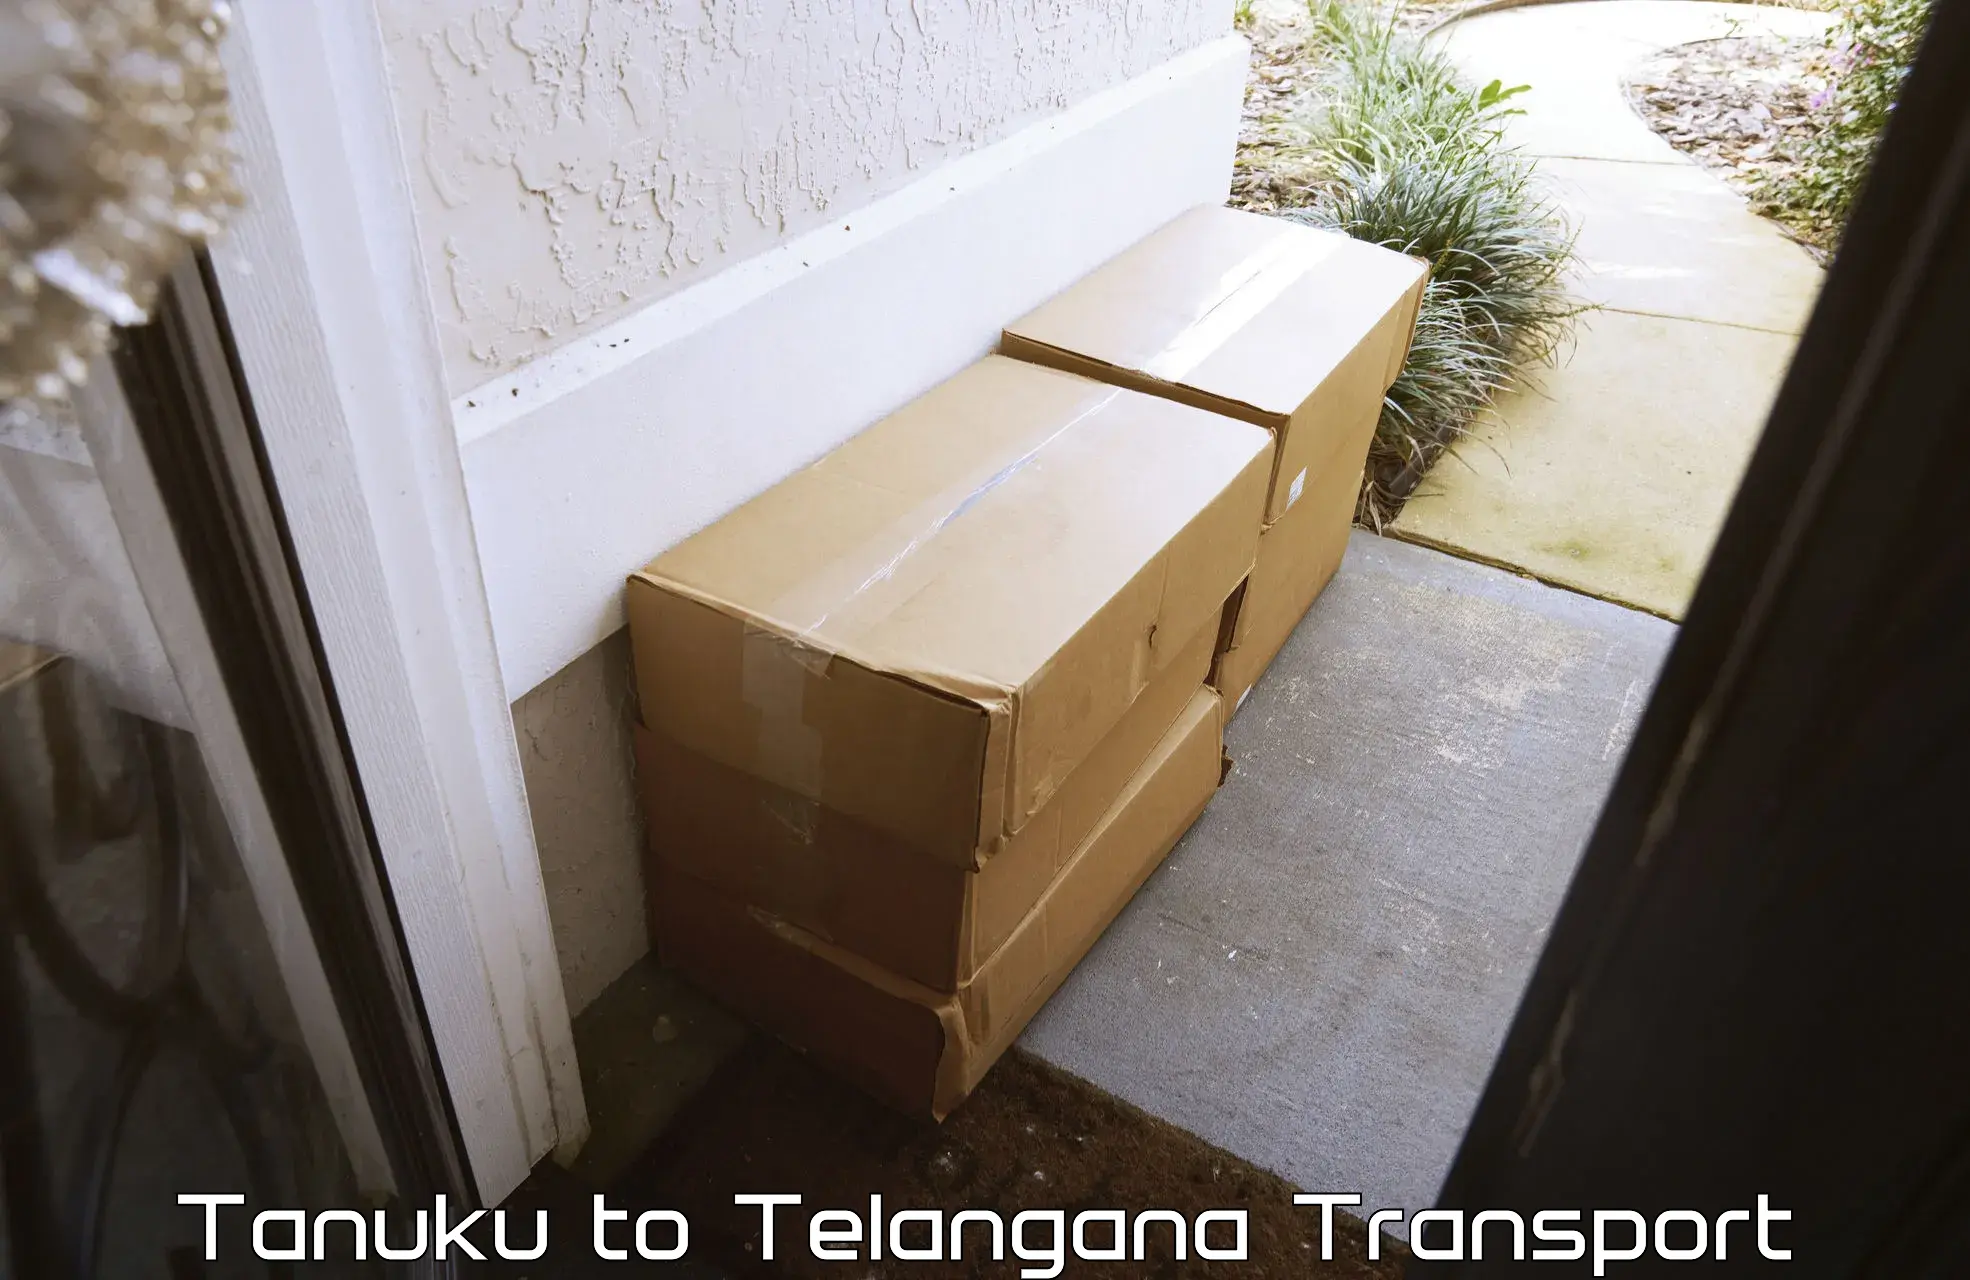 Container transport service Tanuku to Karimnagar